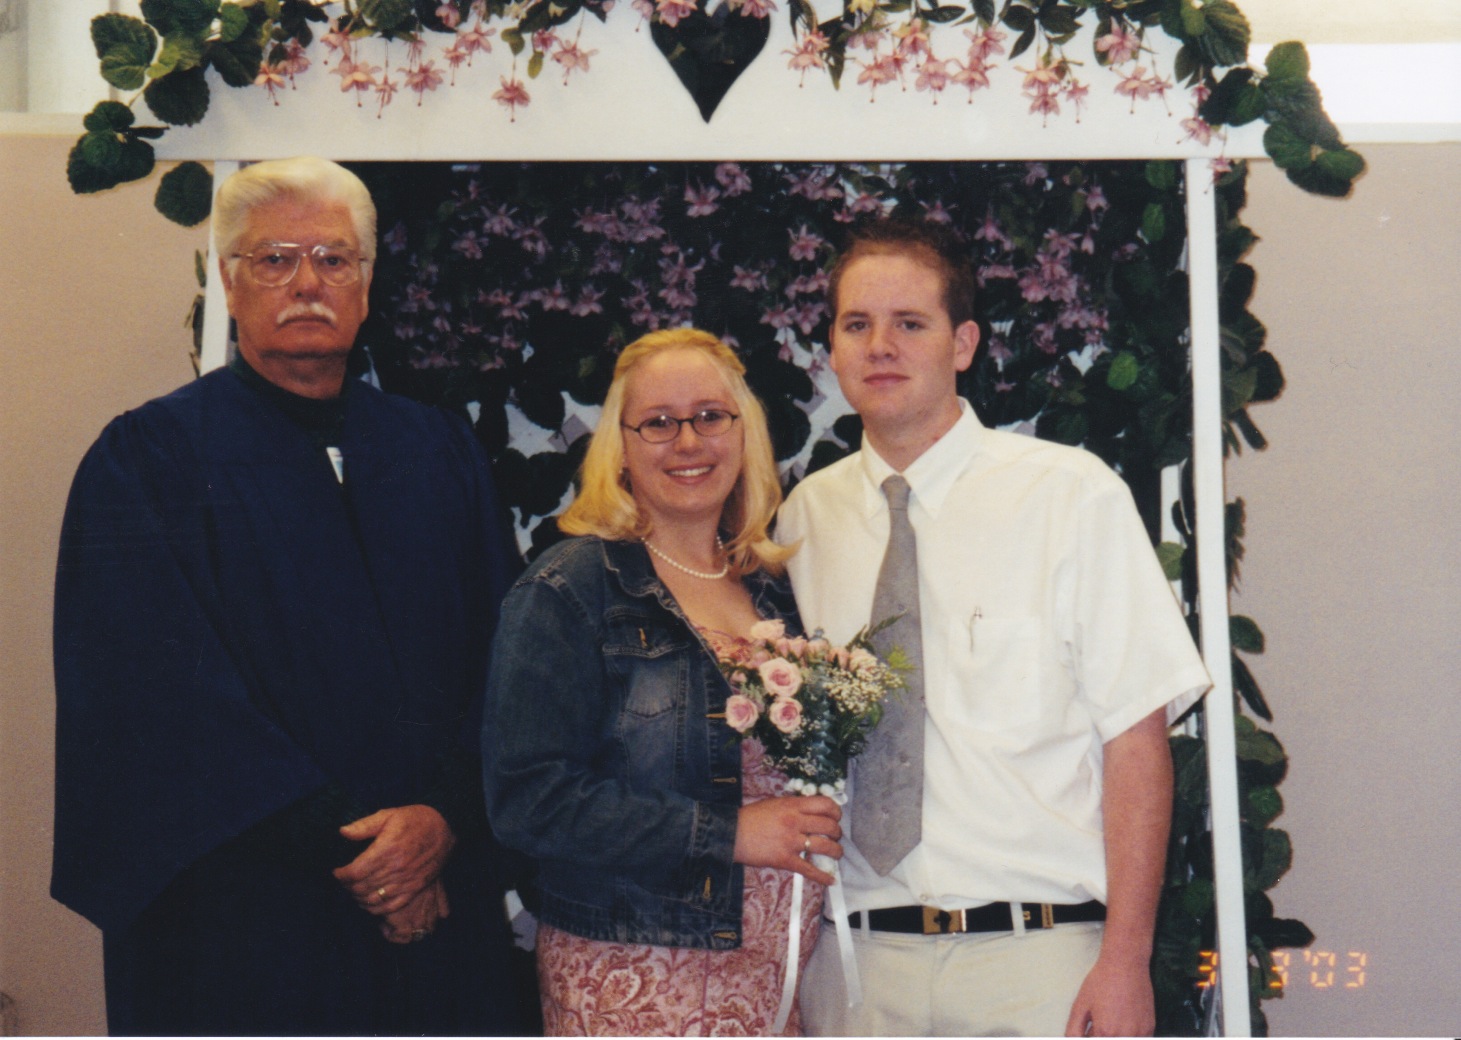 Randy and Ashley, 2003 wedding, Indio courthouse wedding